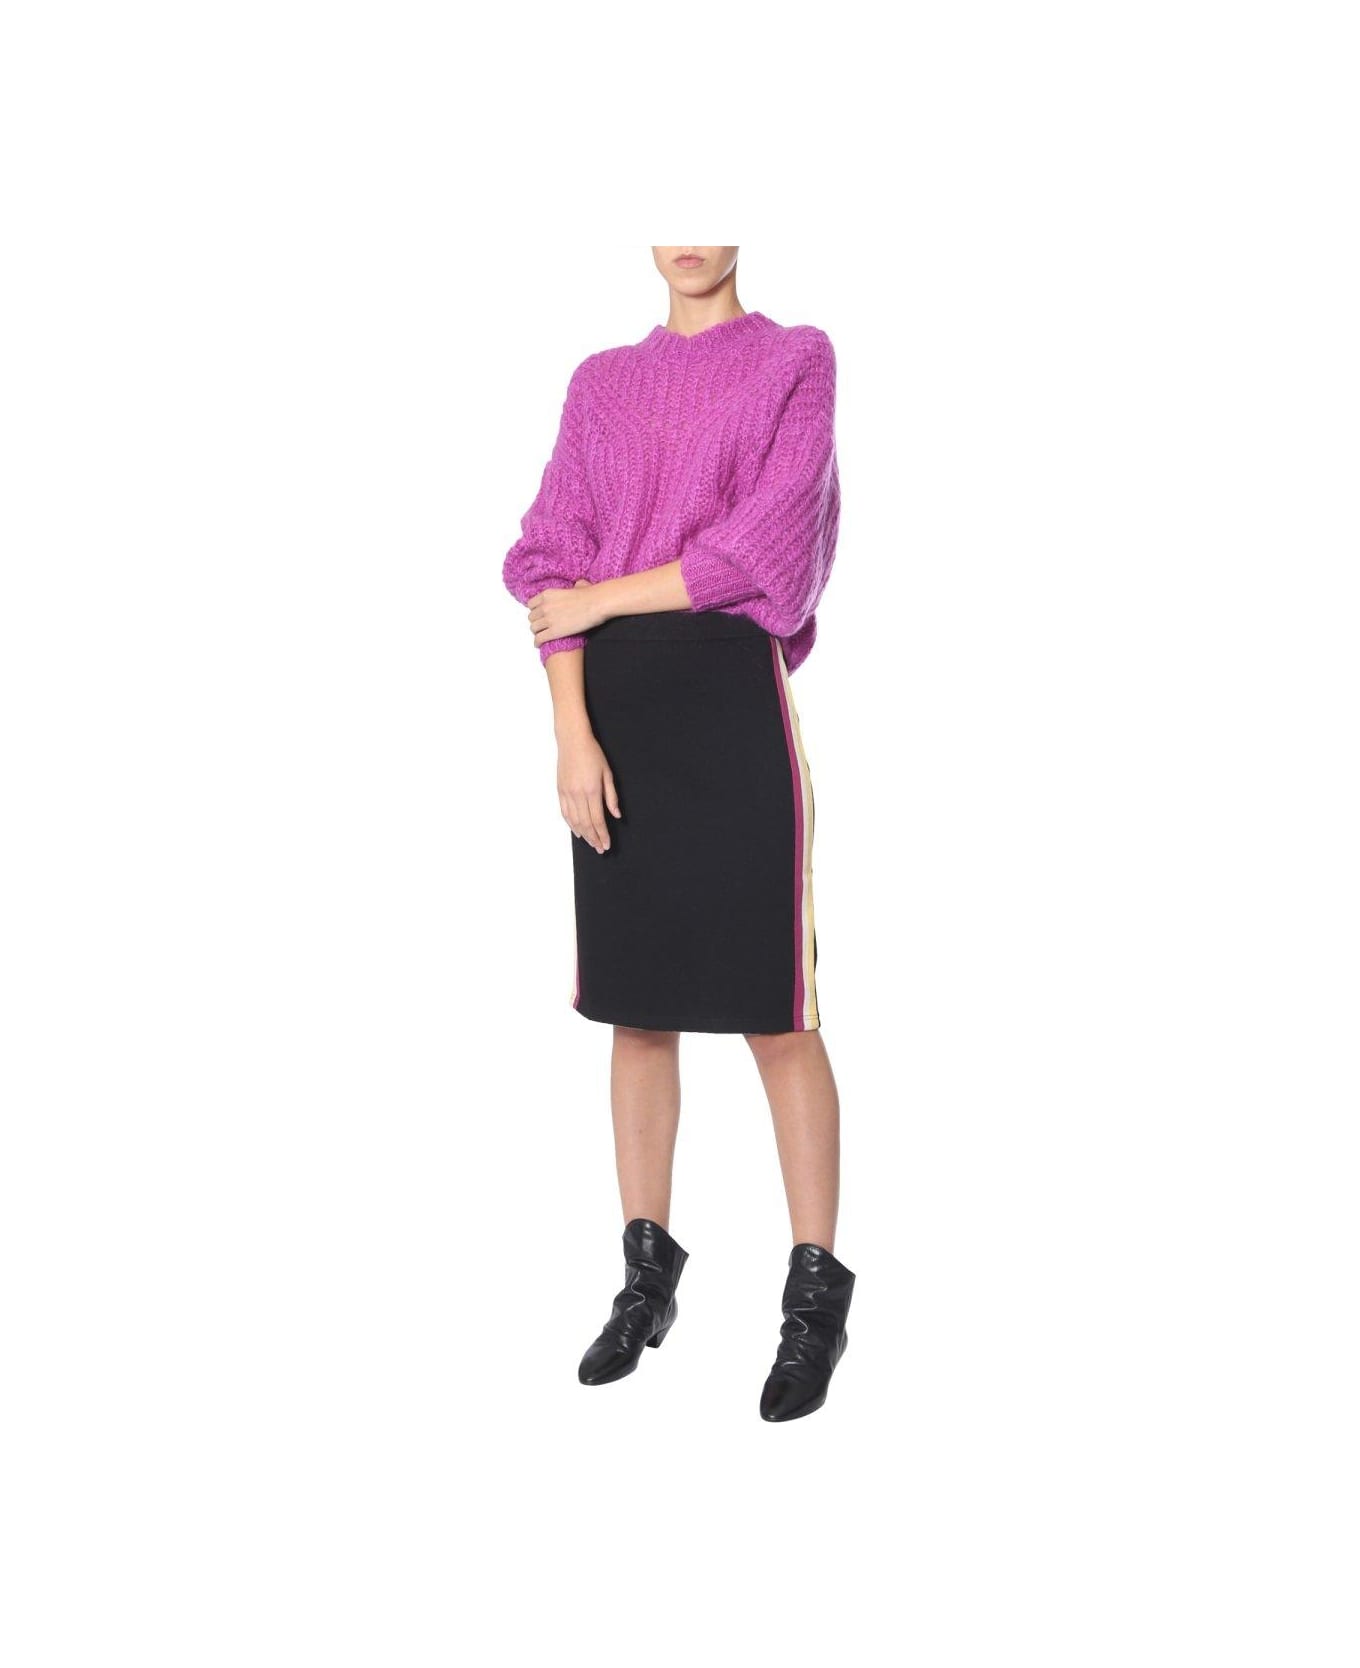 Marant Étoile Side Stripe Skirt - BLACK